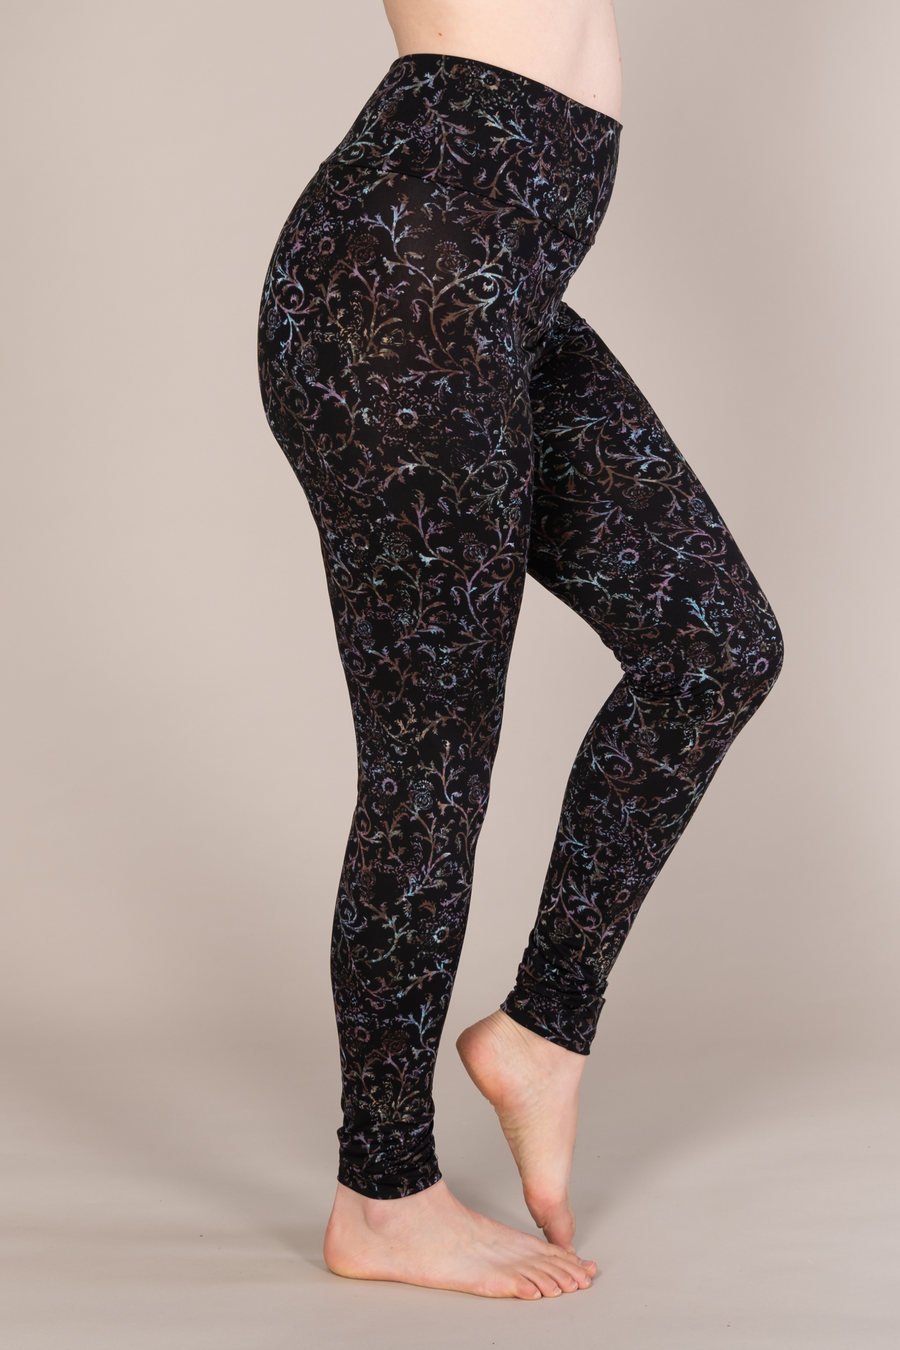 Legging taille haut confortable noir à motifs violets fabriqué au Québec. 